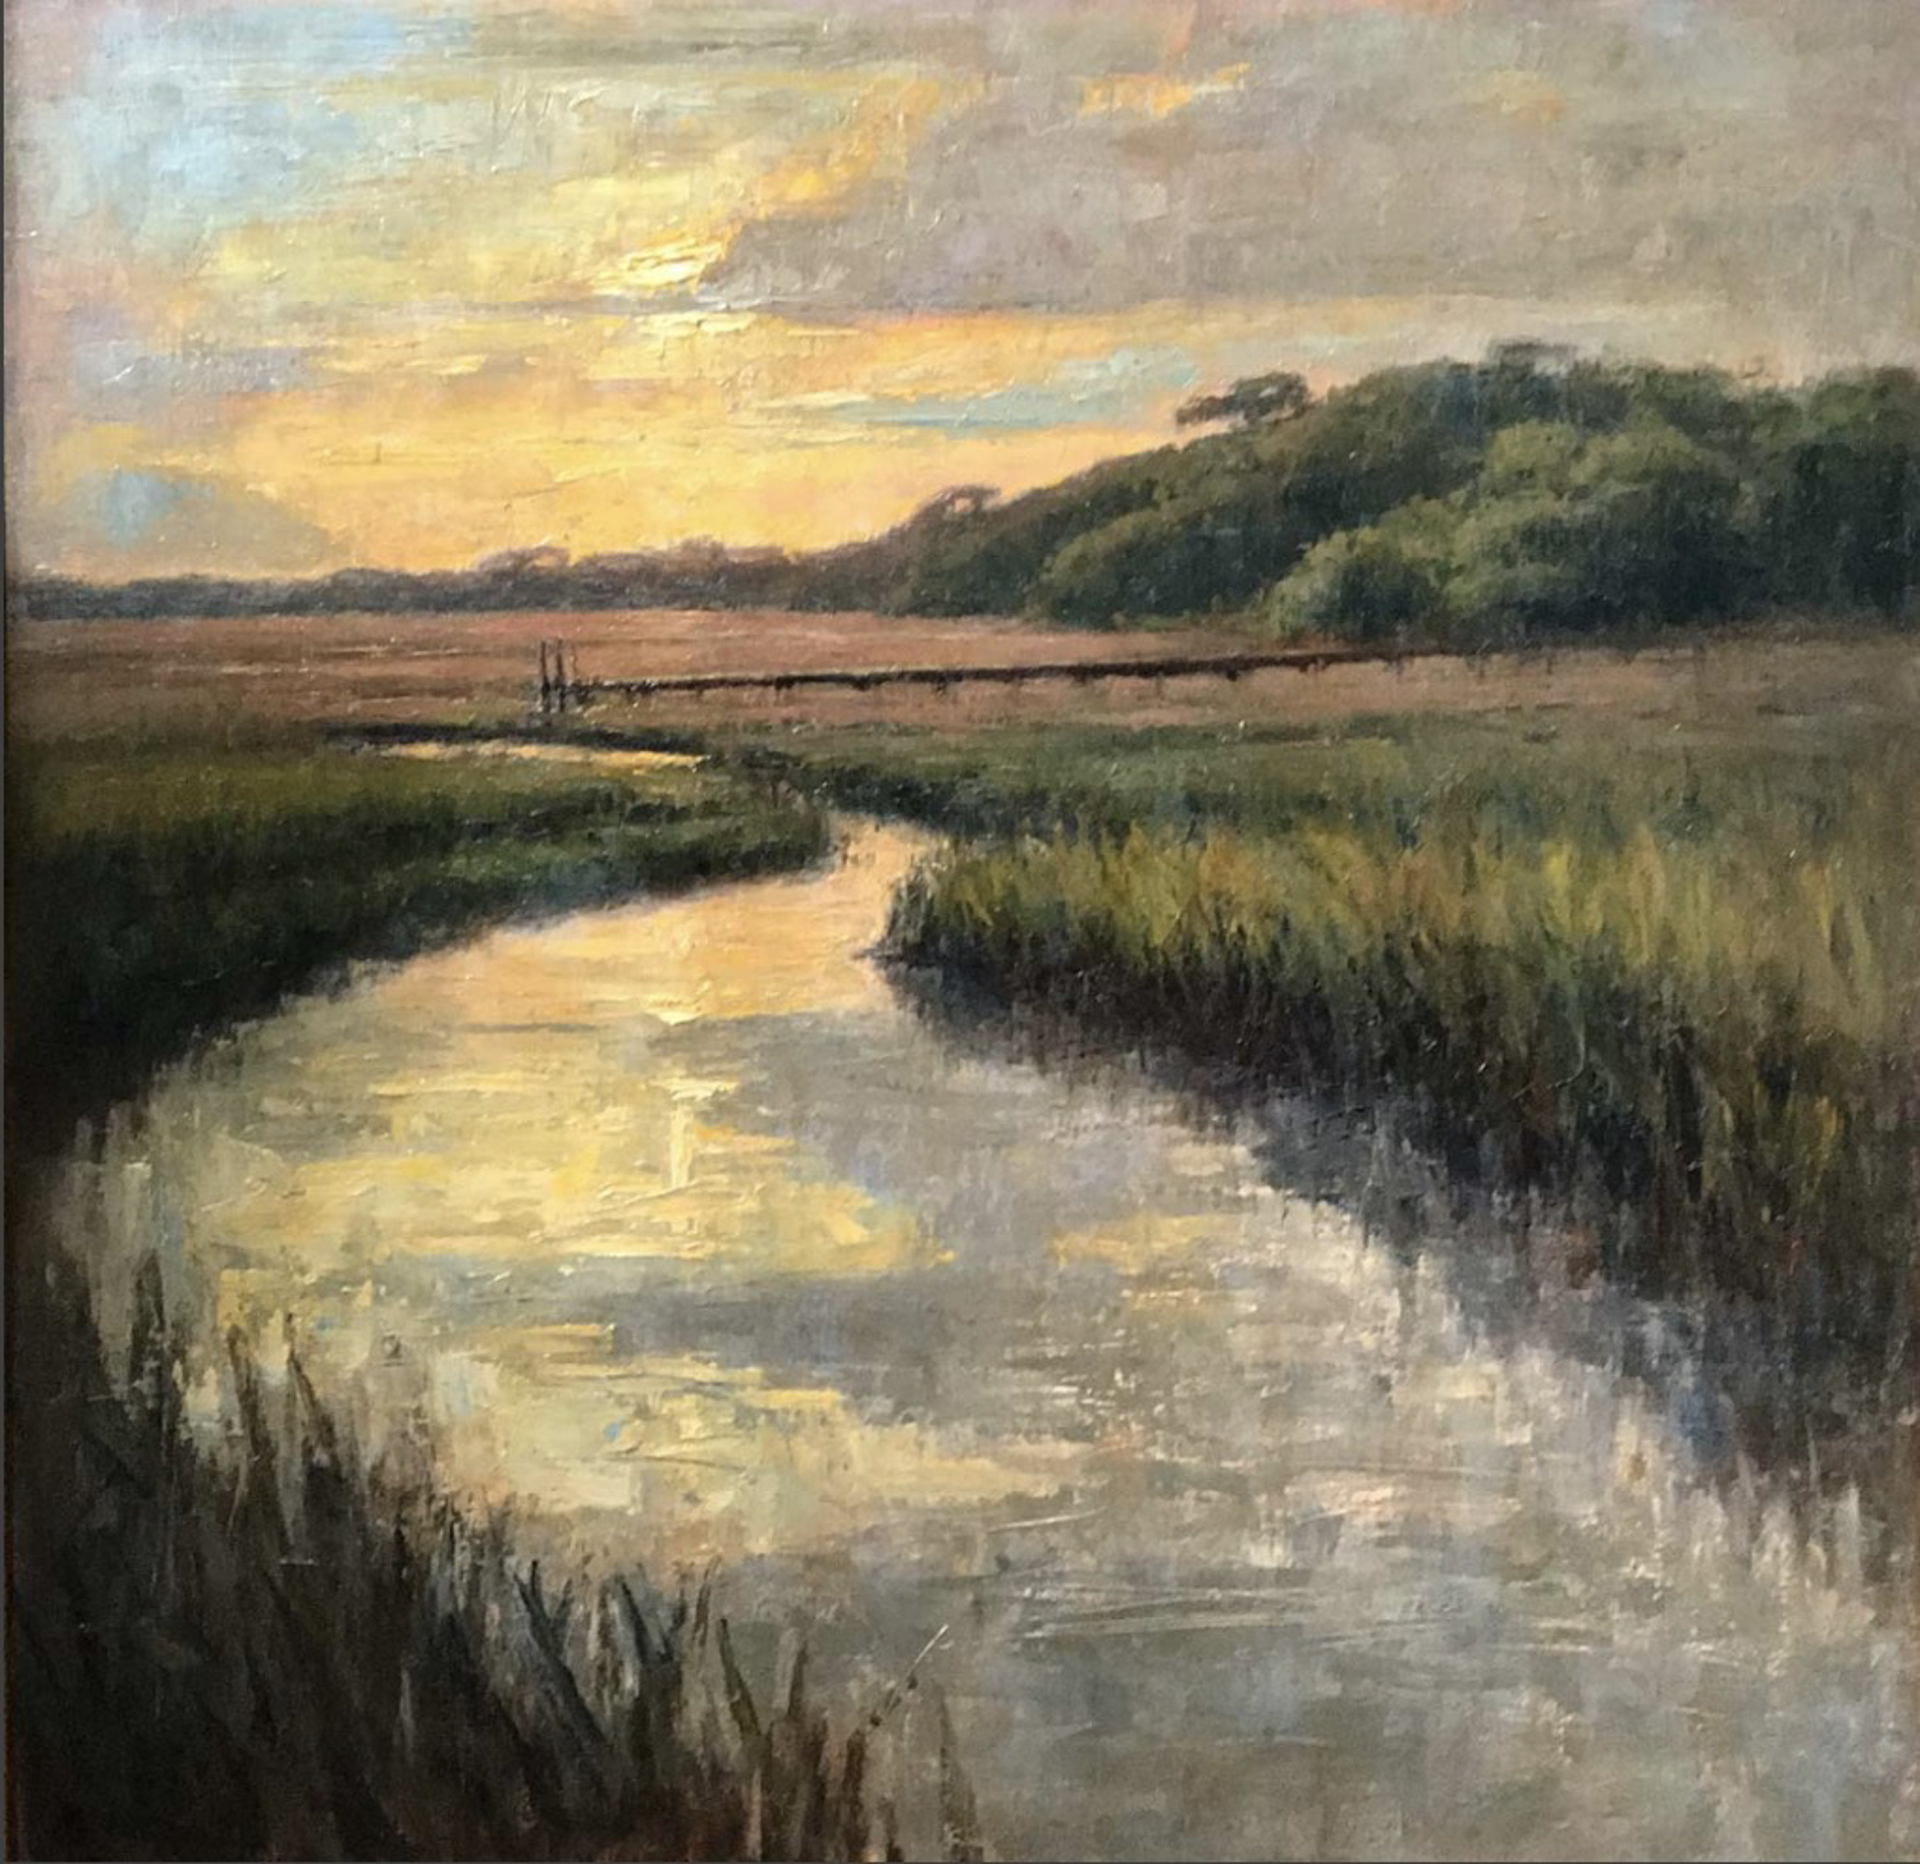 Marsh at Sunset by Brett Weaver